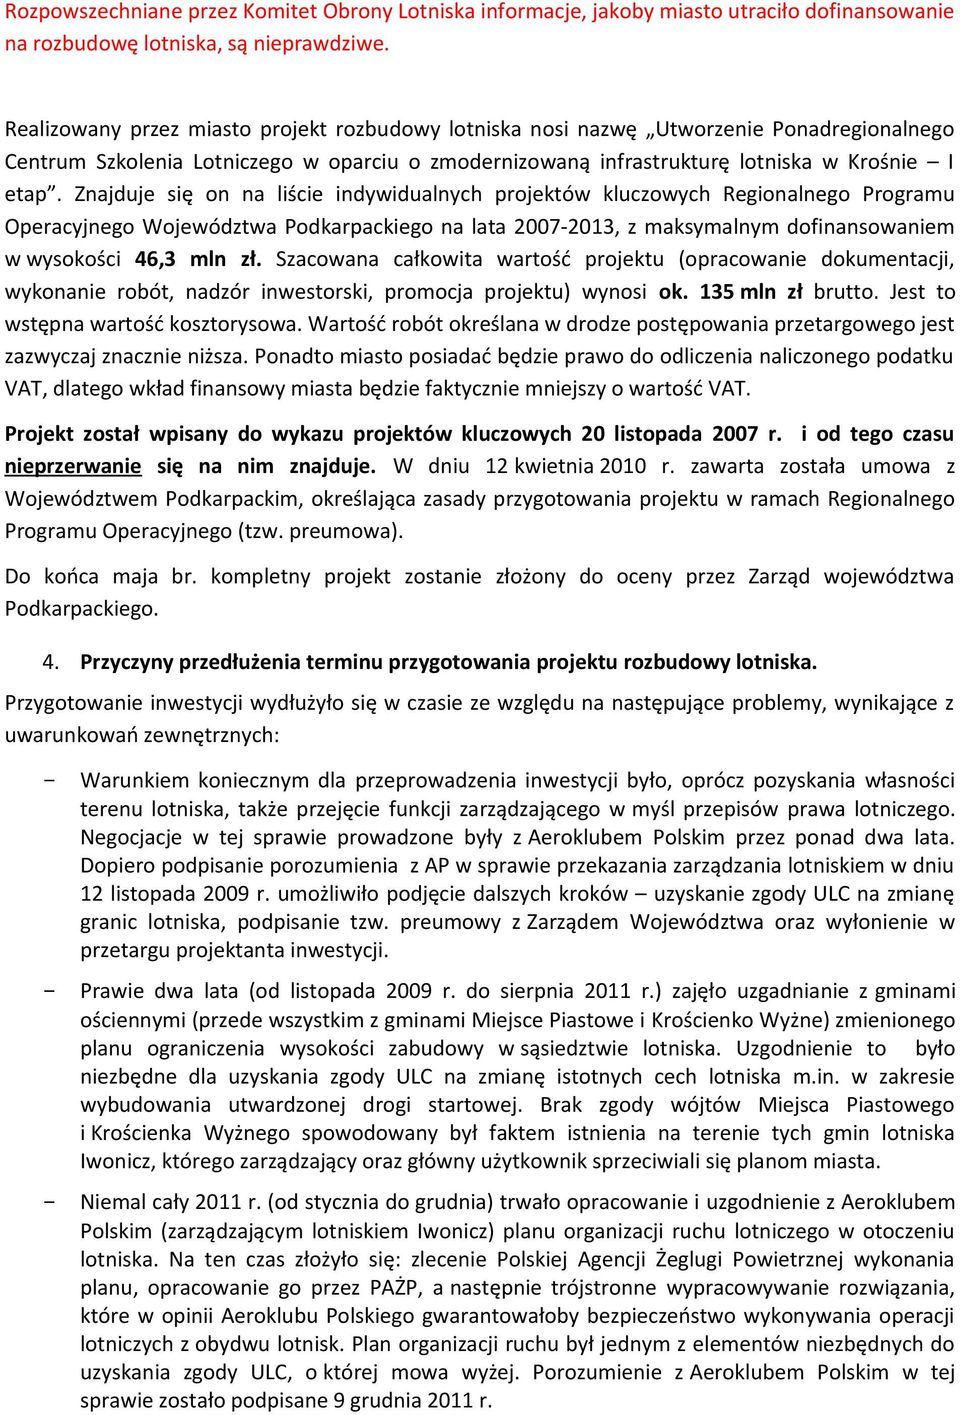 Znajduje się on na liście indywidualnych projektów kluczowych Regionalnego Programu Operacyjnego Województwa Podkarpackiego na lata 2007-2013, z maksymalnym dofinansowaniem w wysokości 46,3 mln zł.